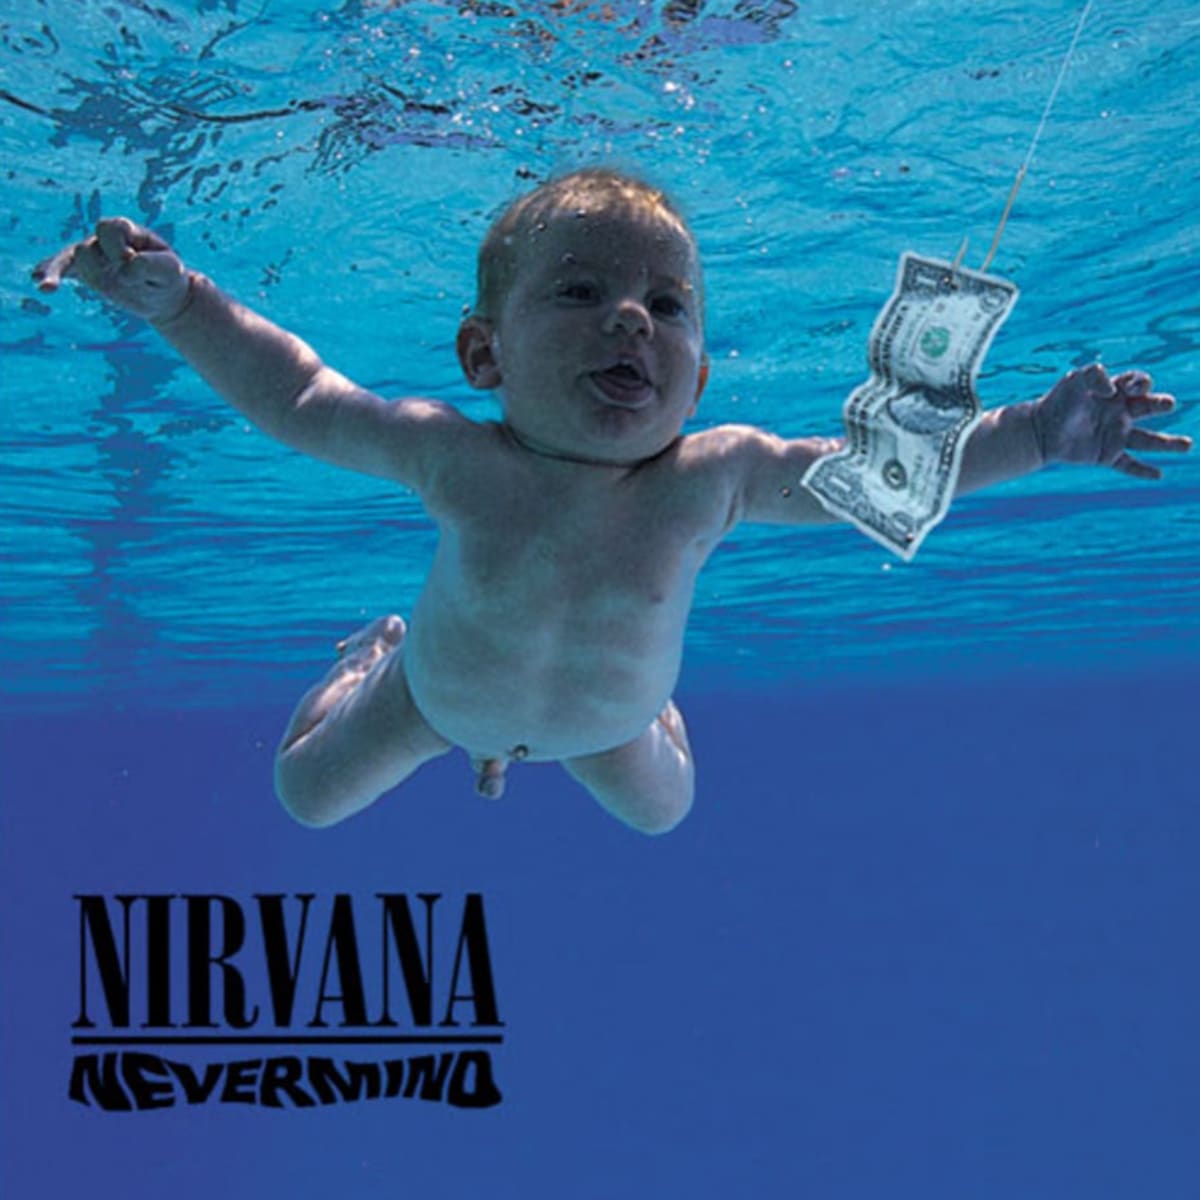 Album kapely Nirvana Nevermind je podle magazínu Rolling Stone 17. nejlepší album všech dob a nejlepší hudební počin 90. let.